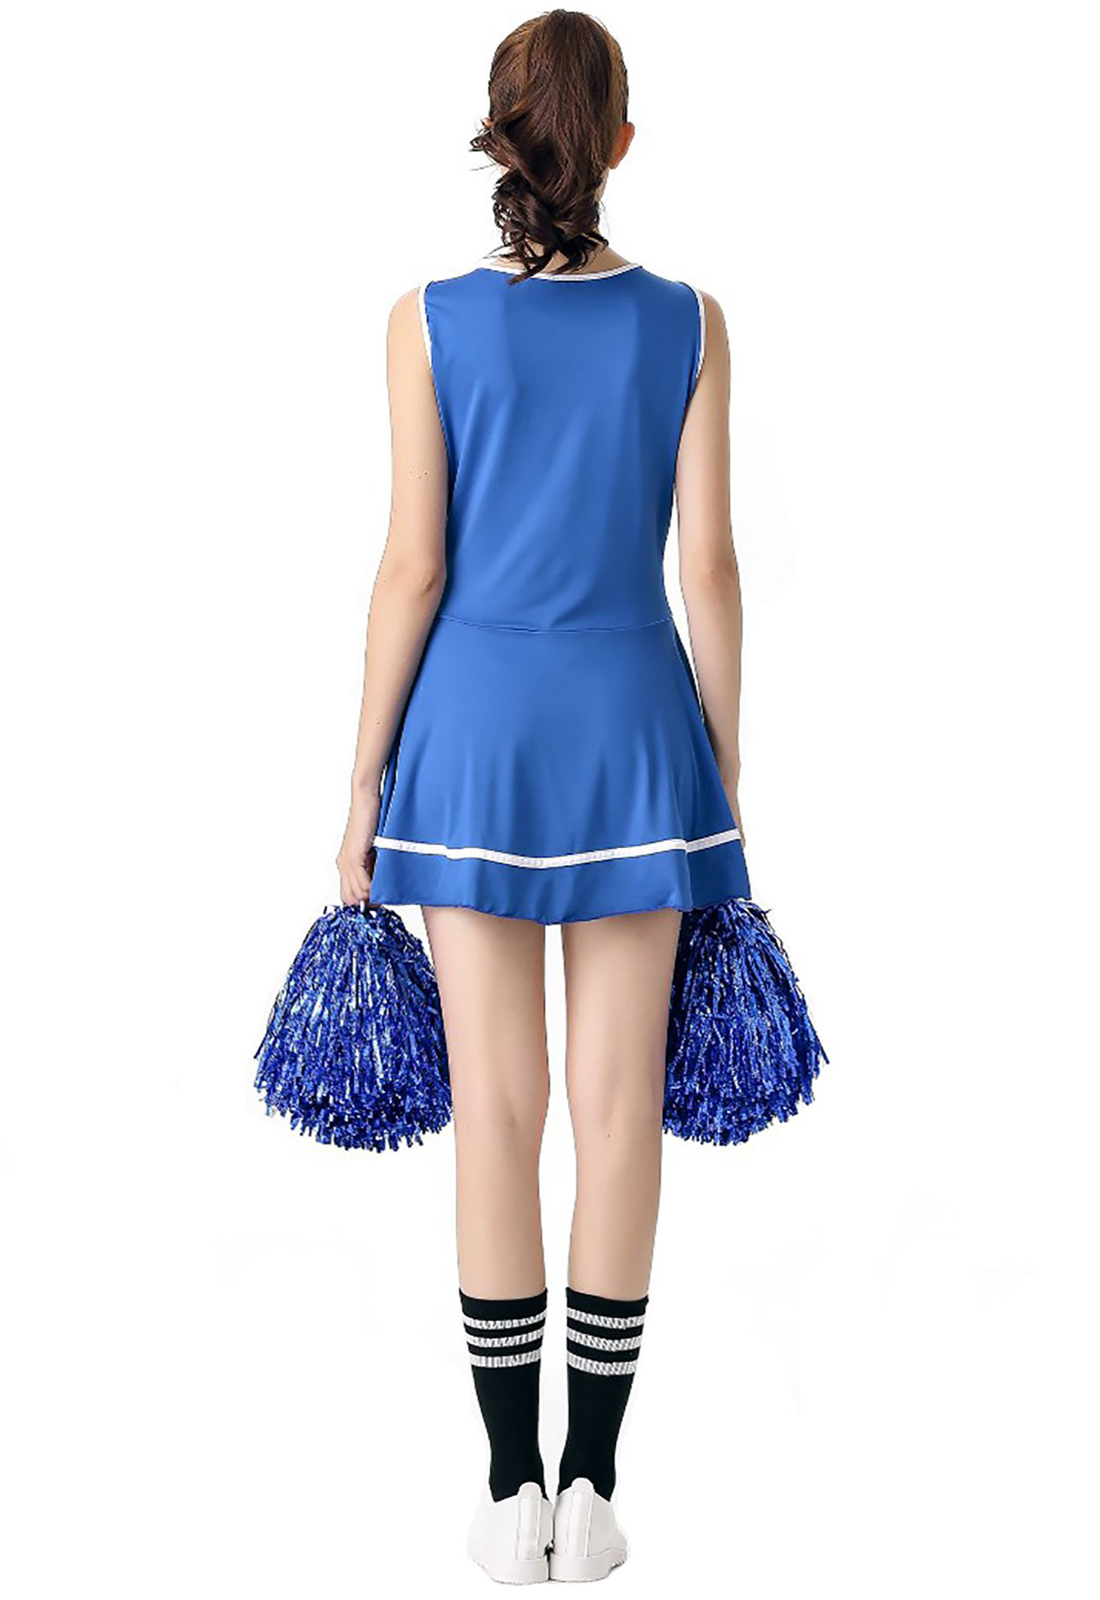 Синий костюм болельщика нарядное платье школьная музыкальная форма черлидинга без помпонов